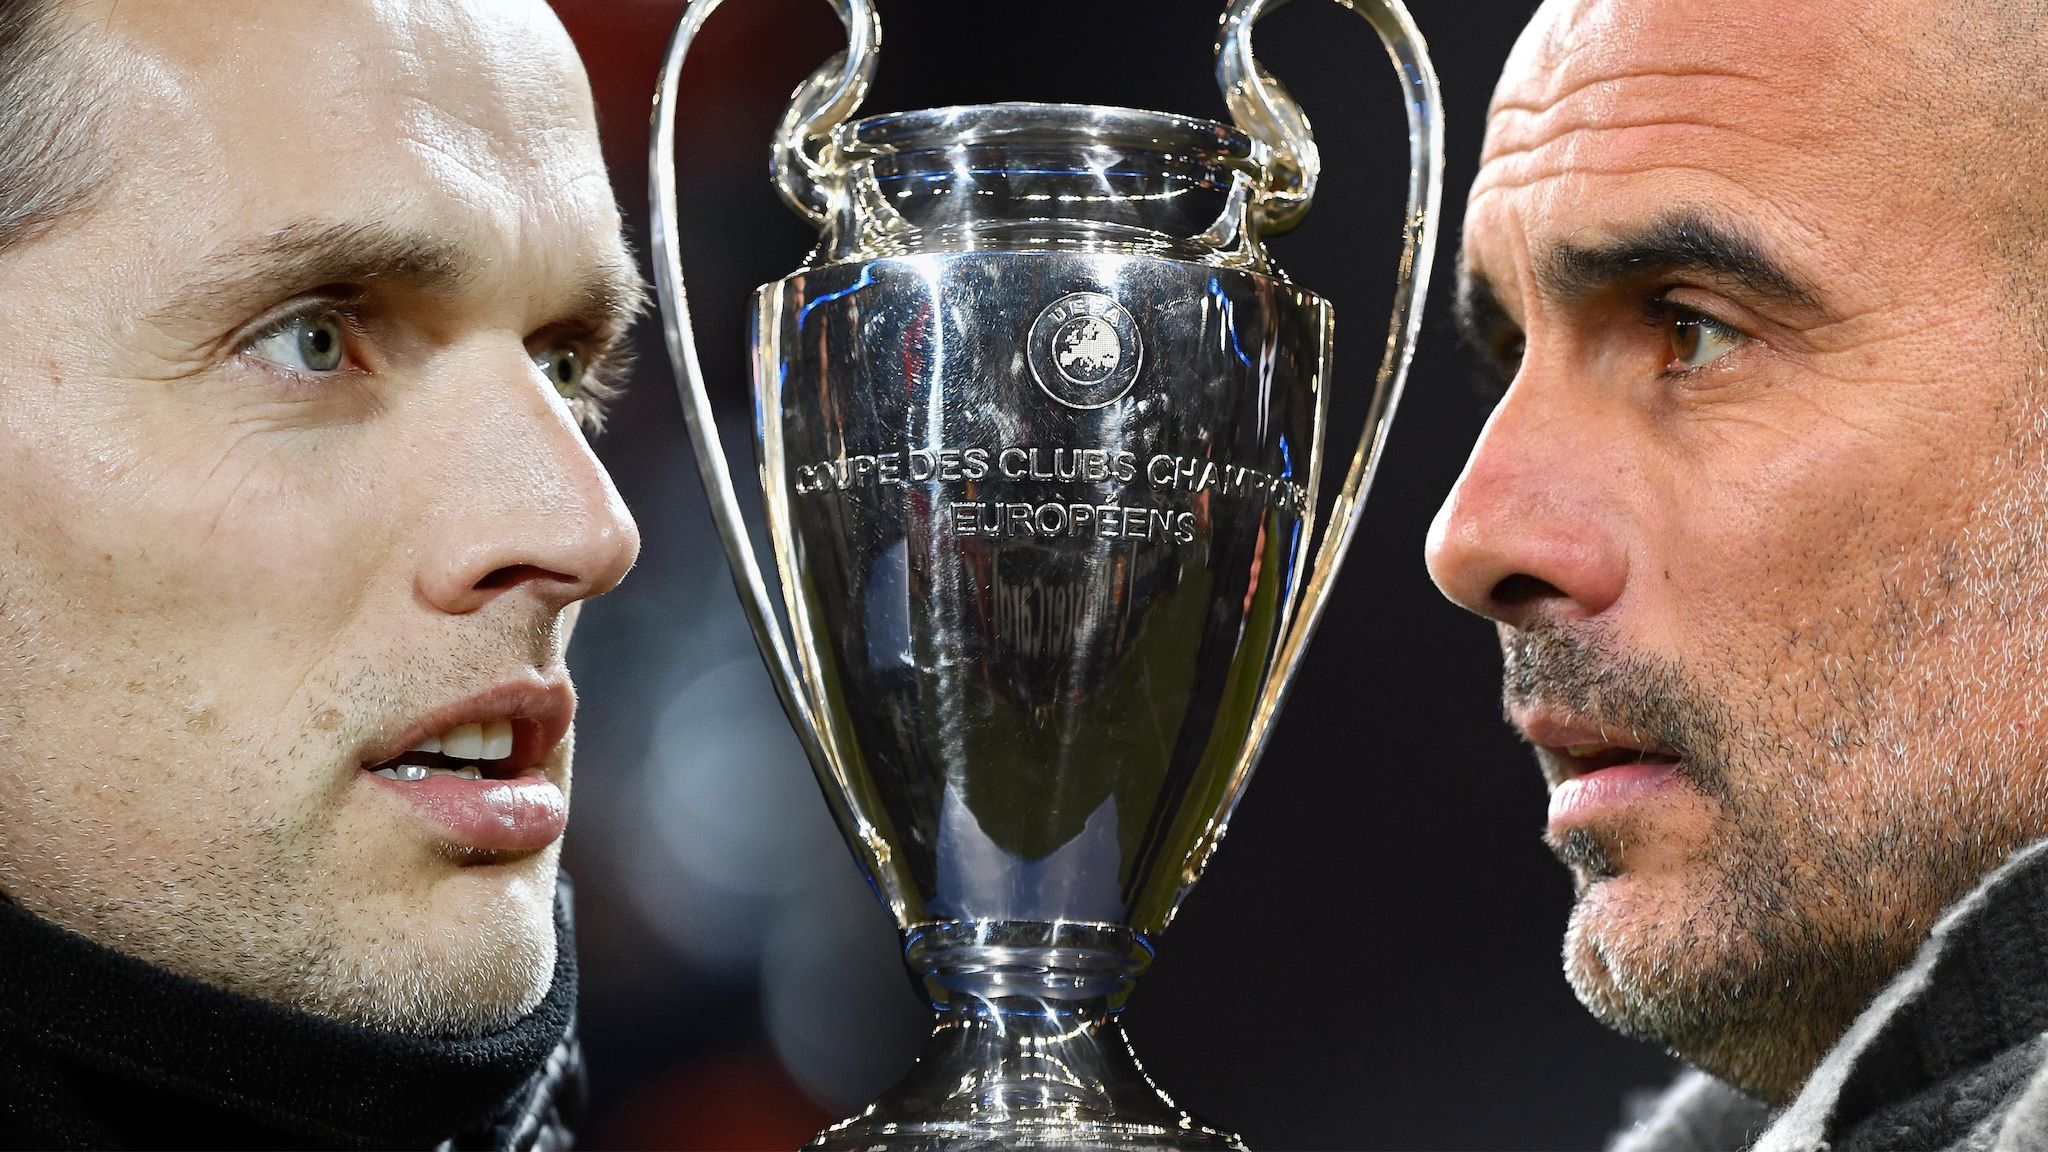 Meet the Champions League finalists: Manchester City vs Chelsea. UEFA Champions League